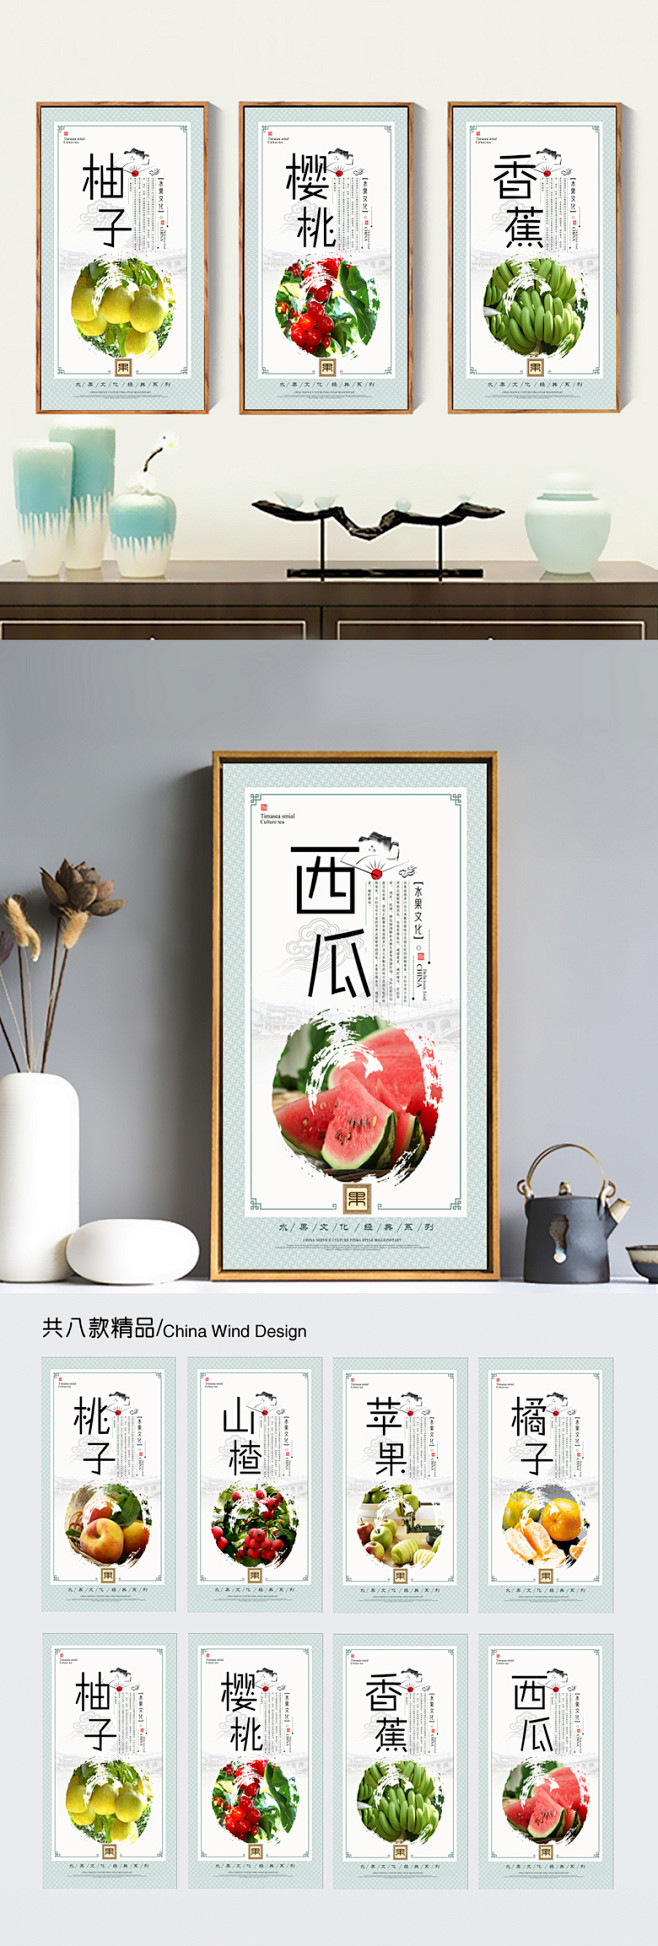 水果连锁店装饰挂画展板设计 水果超市海报...